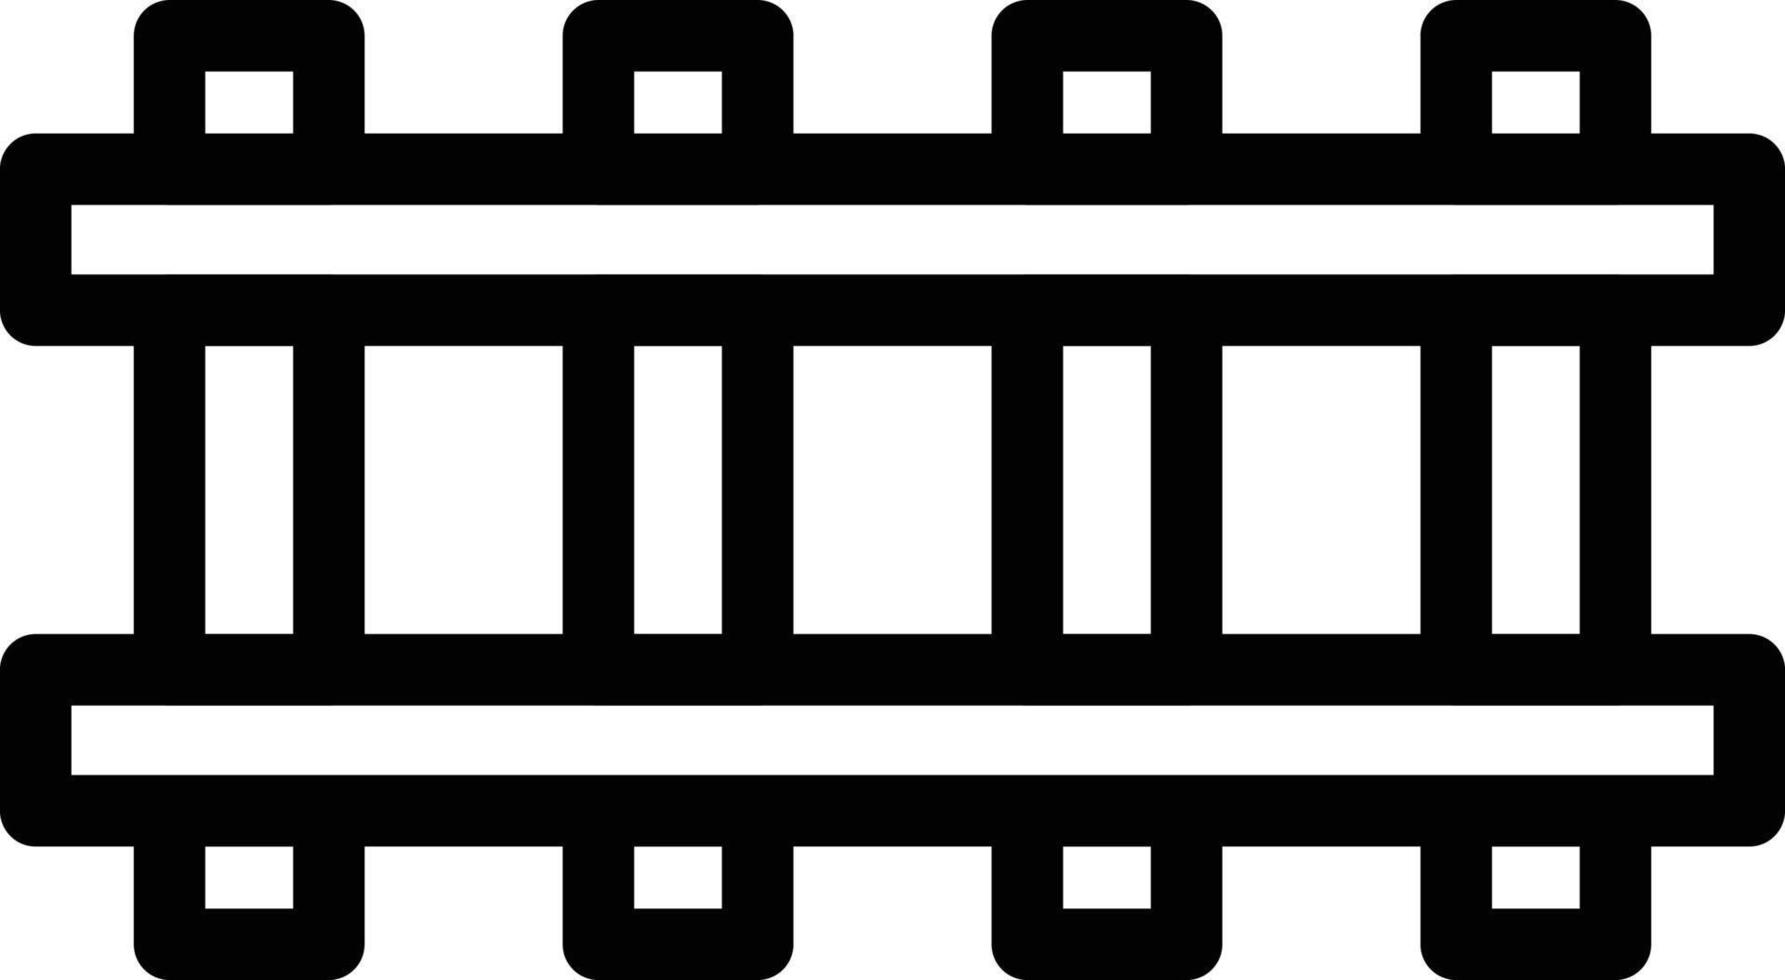 illustrazione vettoriale di binari ferroviari su uno sfondo. simboli di qualità premium. icone vettoriali per il concetto e la progettazione grafica.